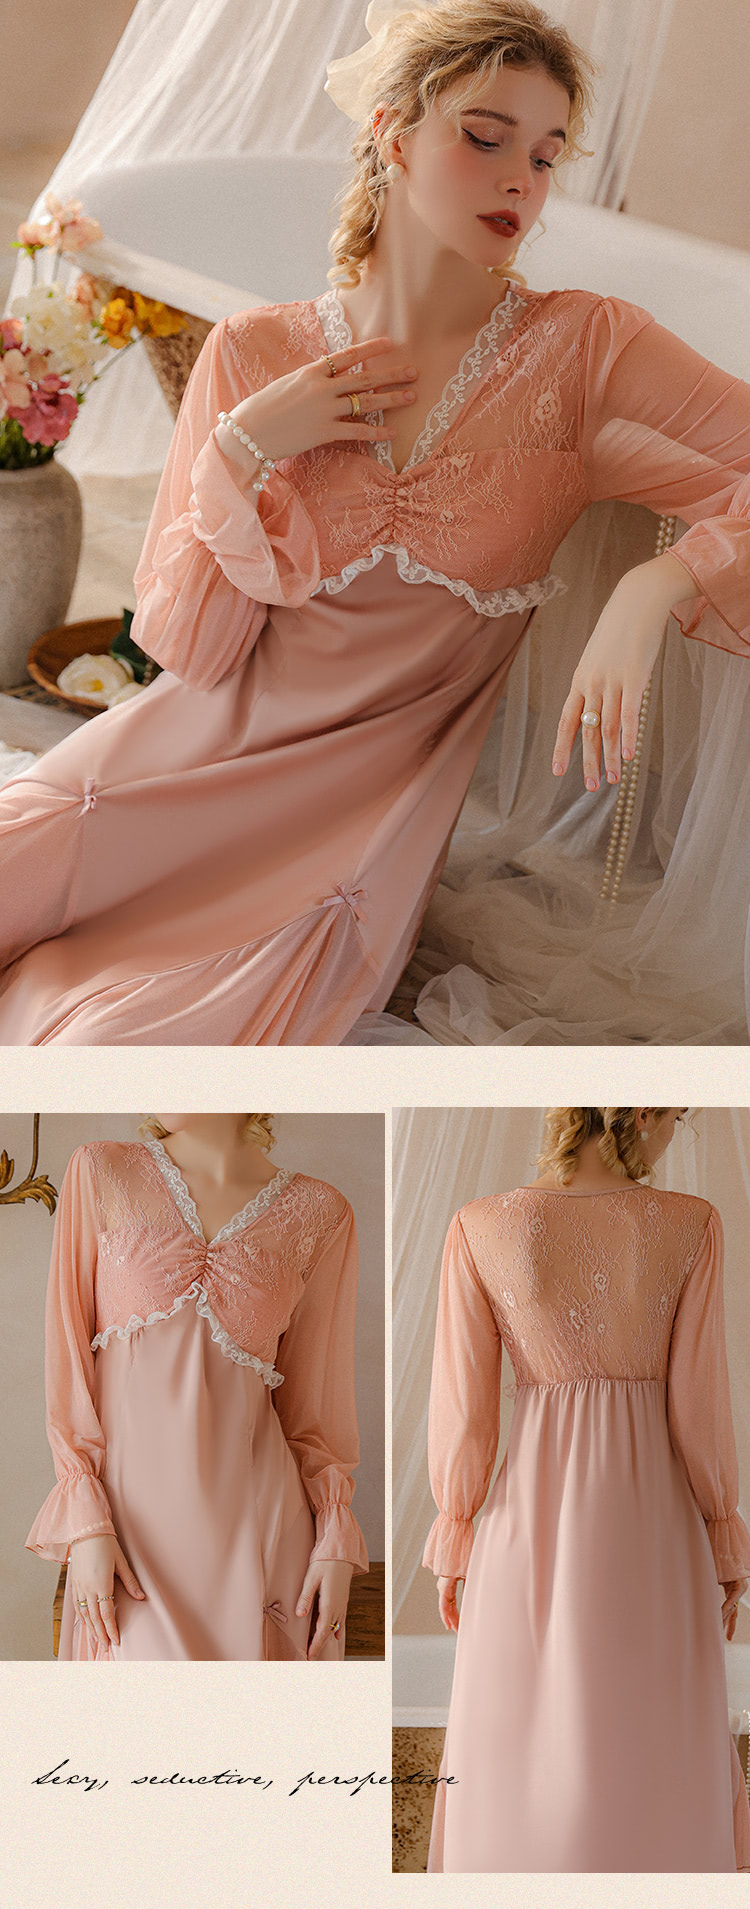 Sweet-Lace-Long-Sleeve-Nightwear-Ladies-Sexy-Lingerie-Dress15